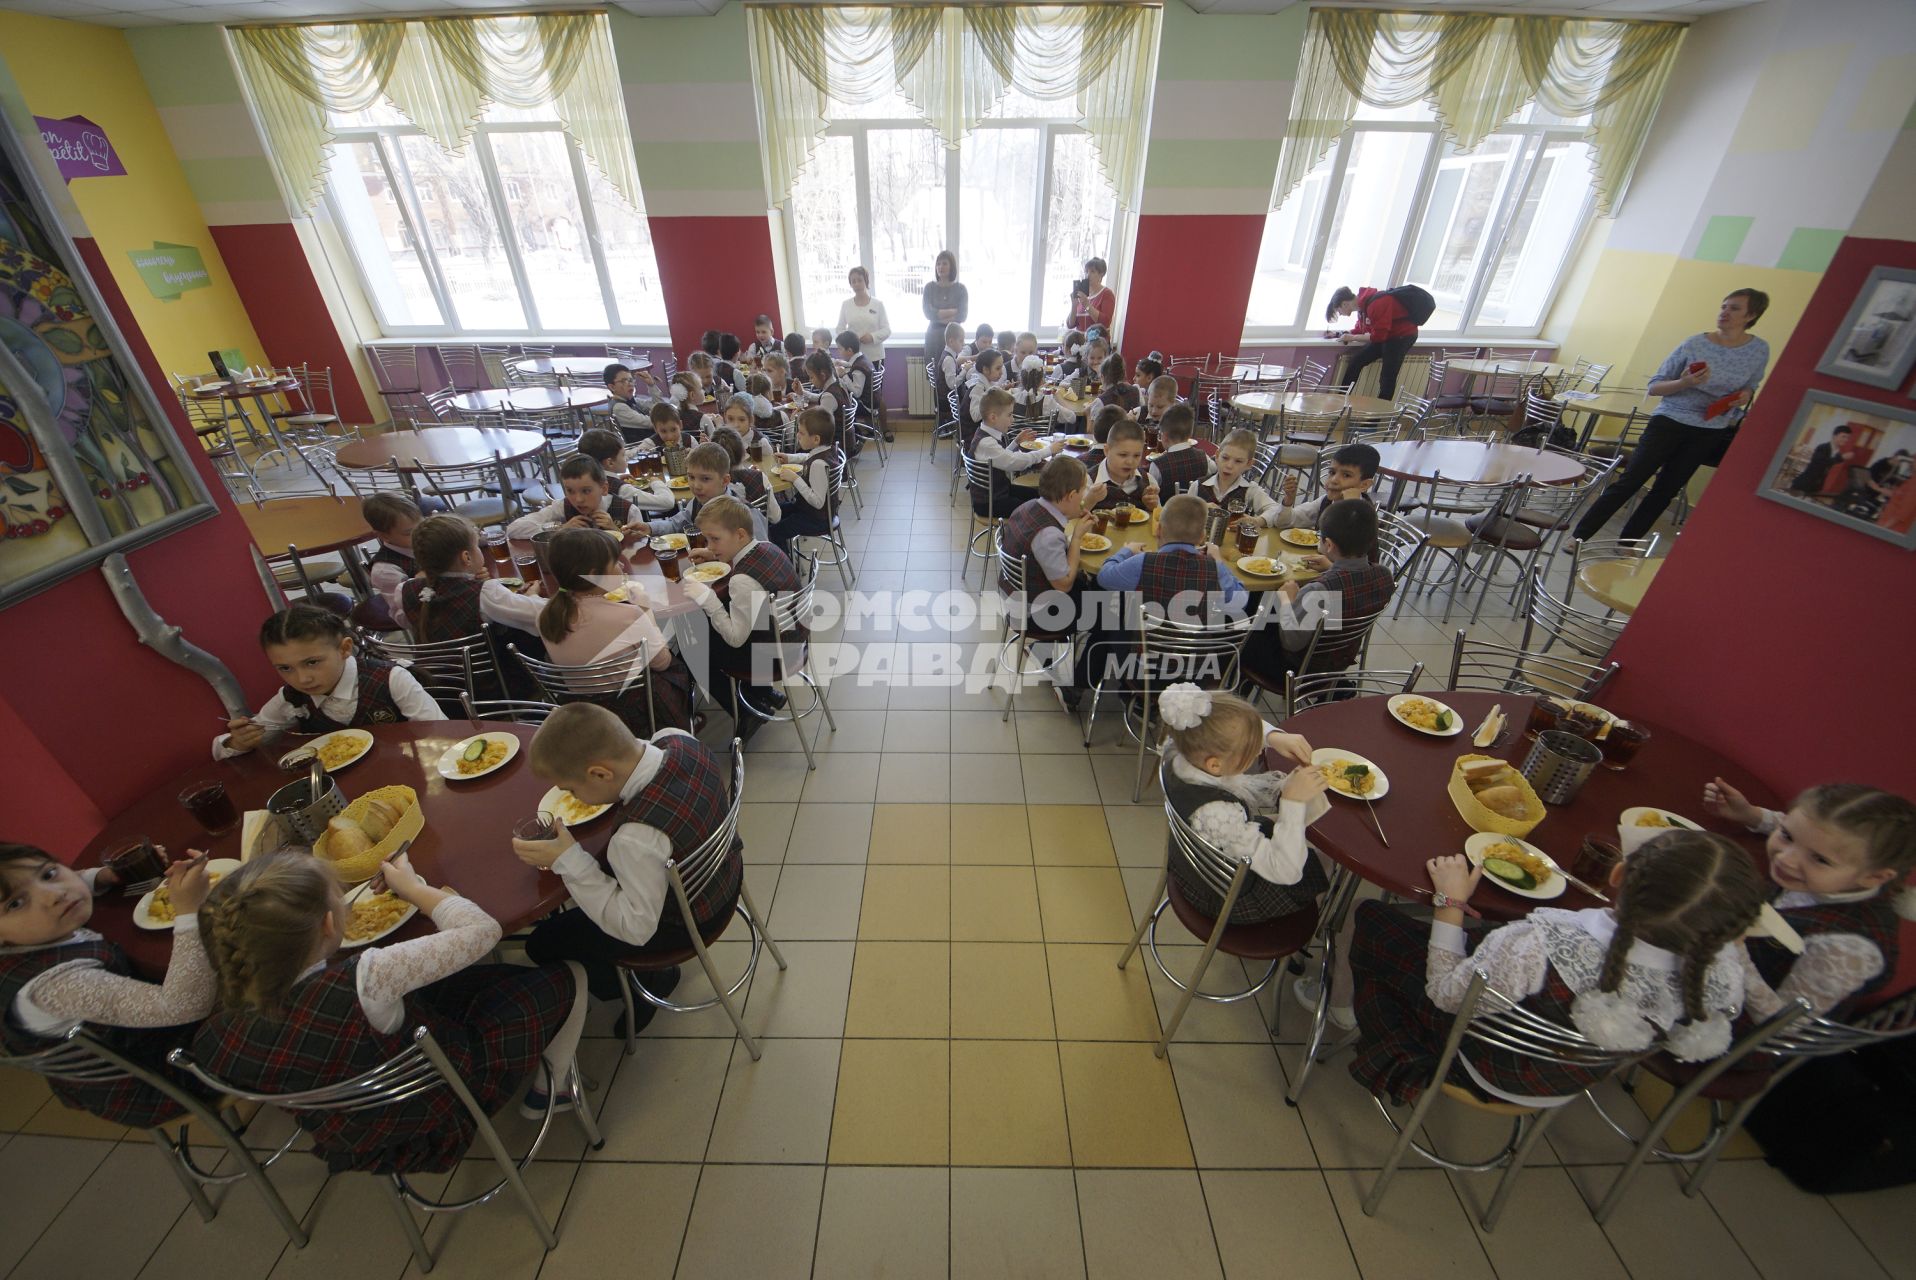 Екатеринбург. Дети обедают в школьной столовой